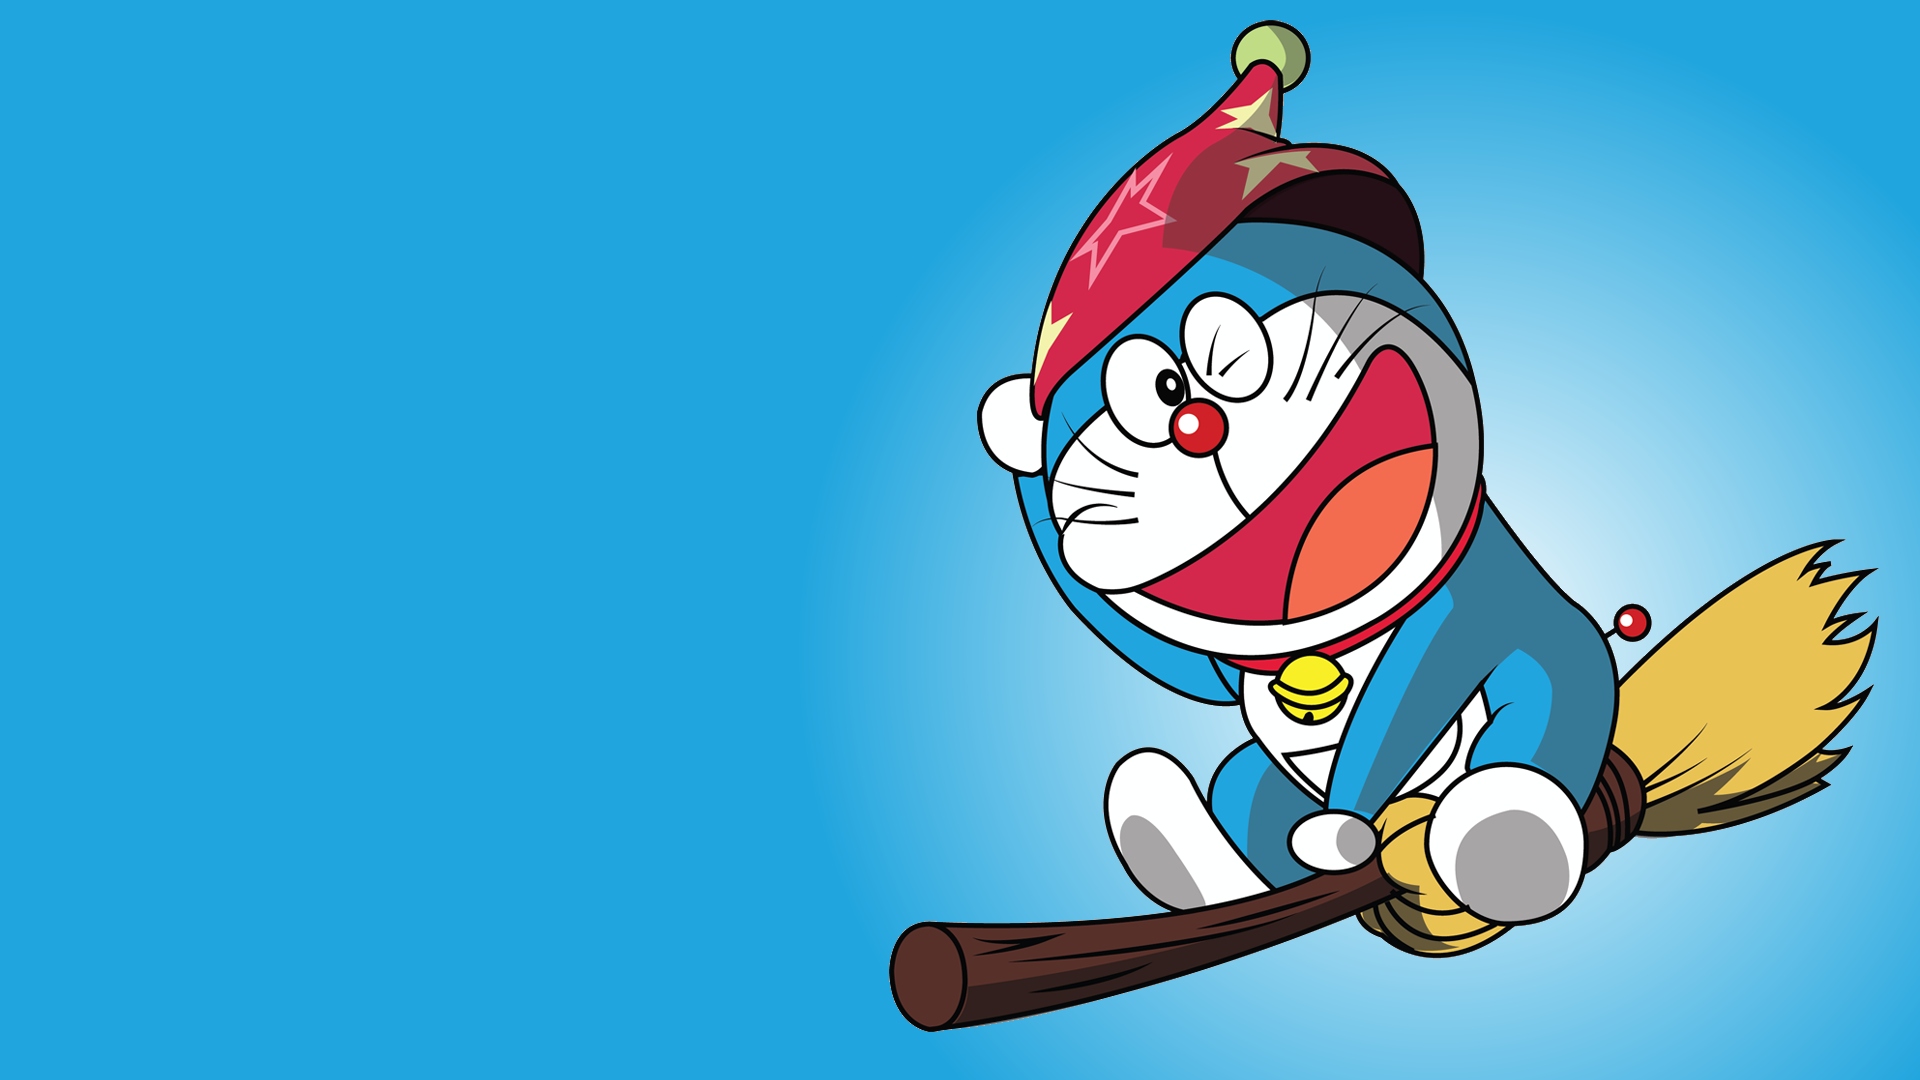 Doraemon hình nền: Hãy trang trí màn hình điện thoại và máy tính của bạn với những hình nền Doraemon cực kỳ đáng yêu và hài hước. Với sự góp mặt của chú mèo máy Doraemon, cuộc sống sẽ trở nên tươi vui và nhẹ nhàng hơn đấy!